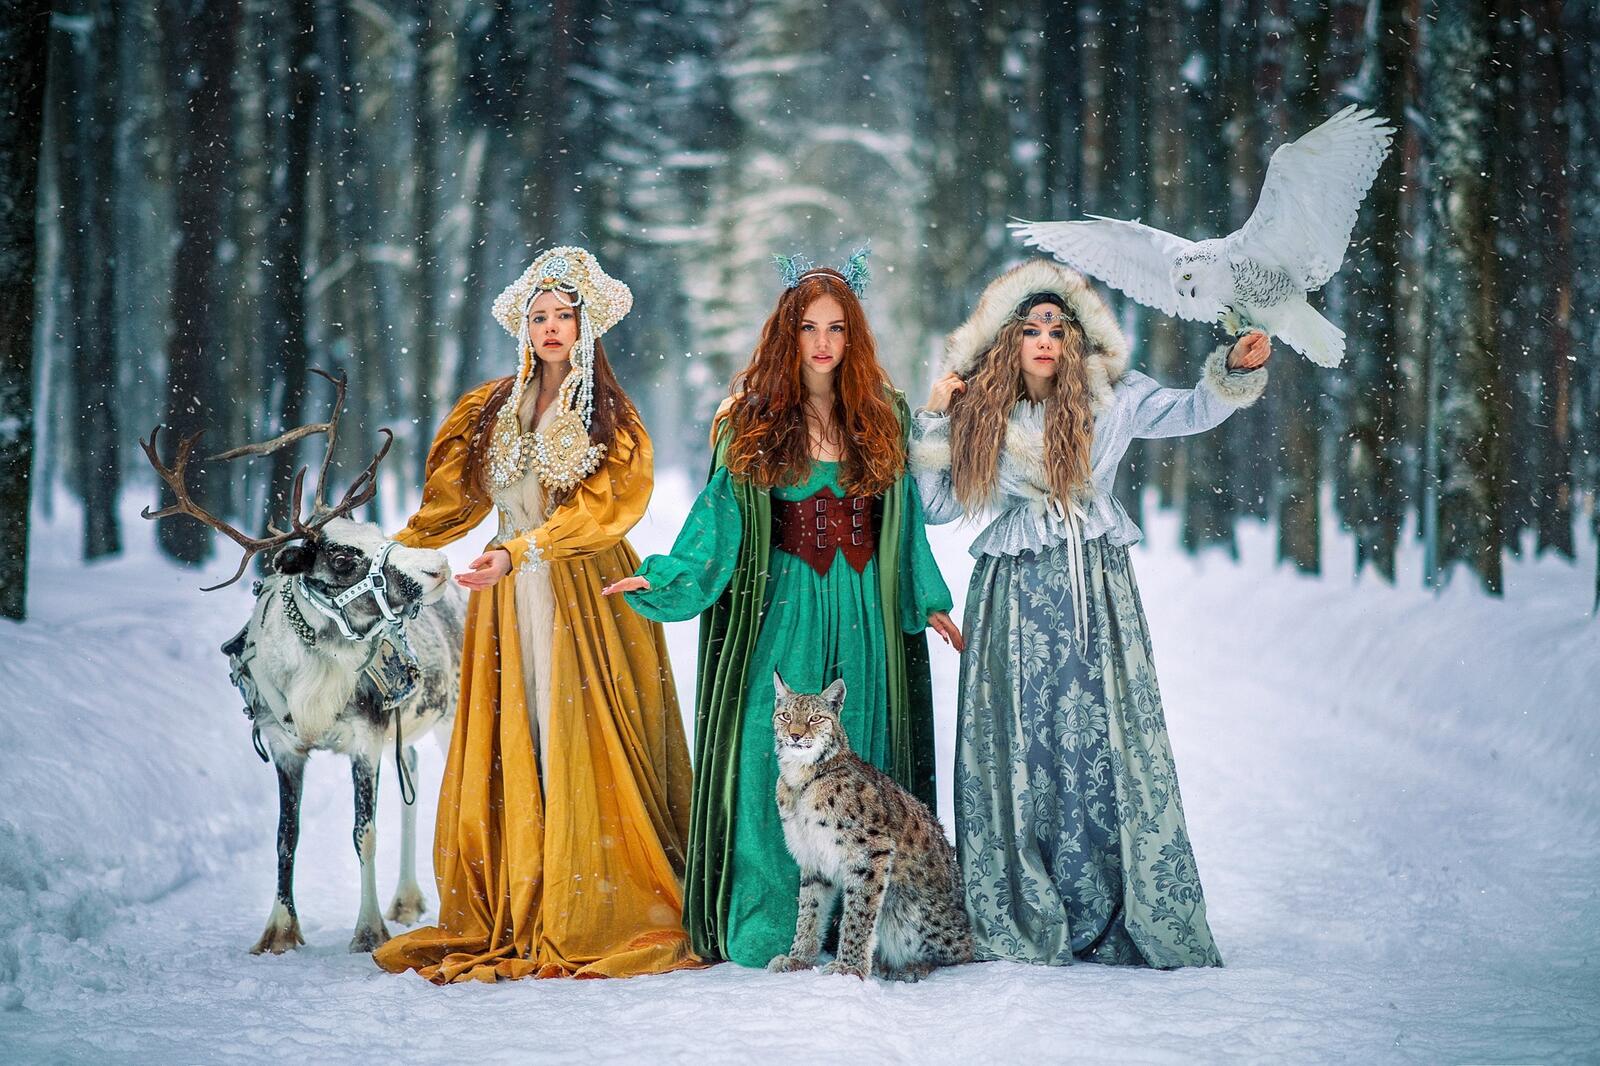 免费照片壁纸 美丽的俄罗斯女孩在冬季